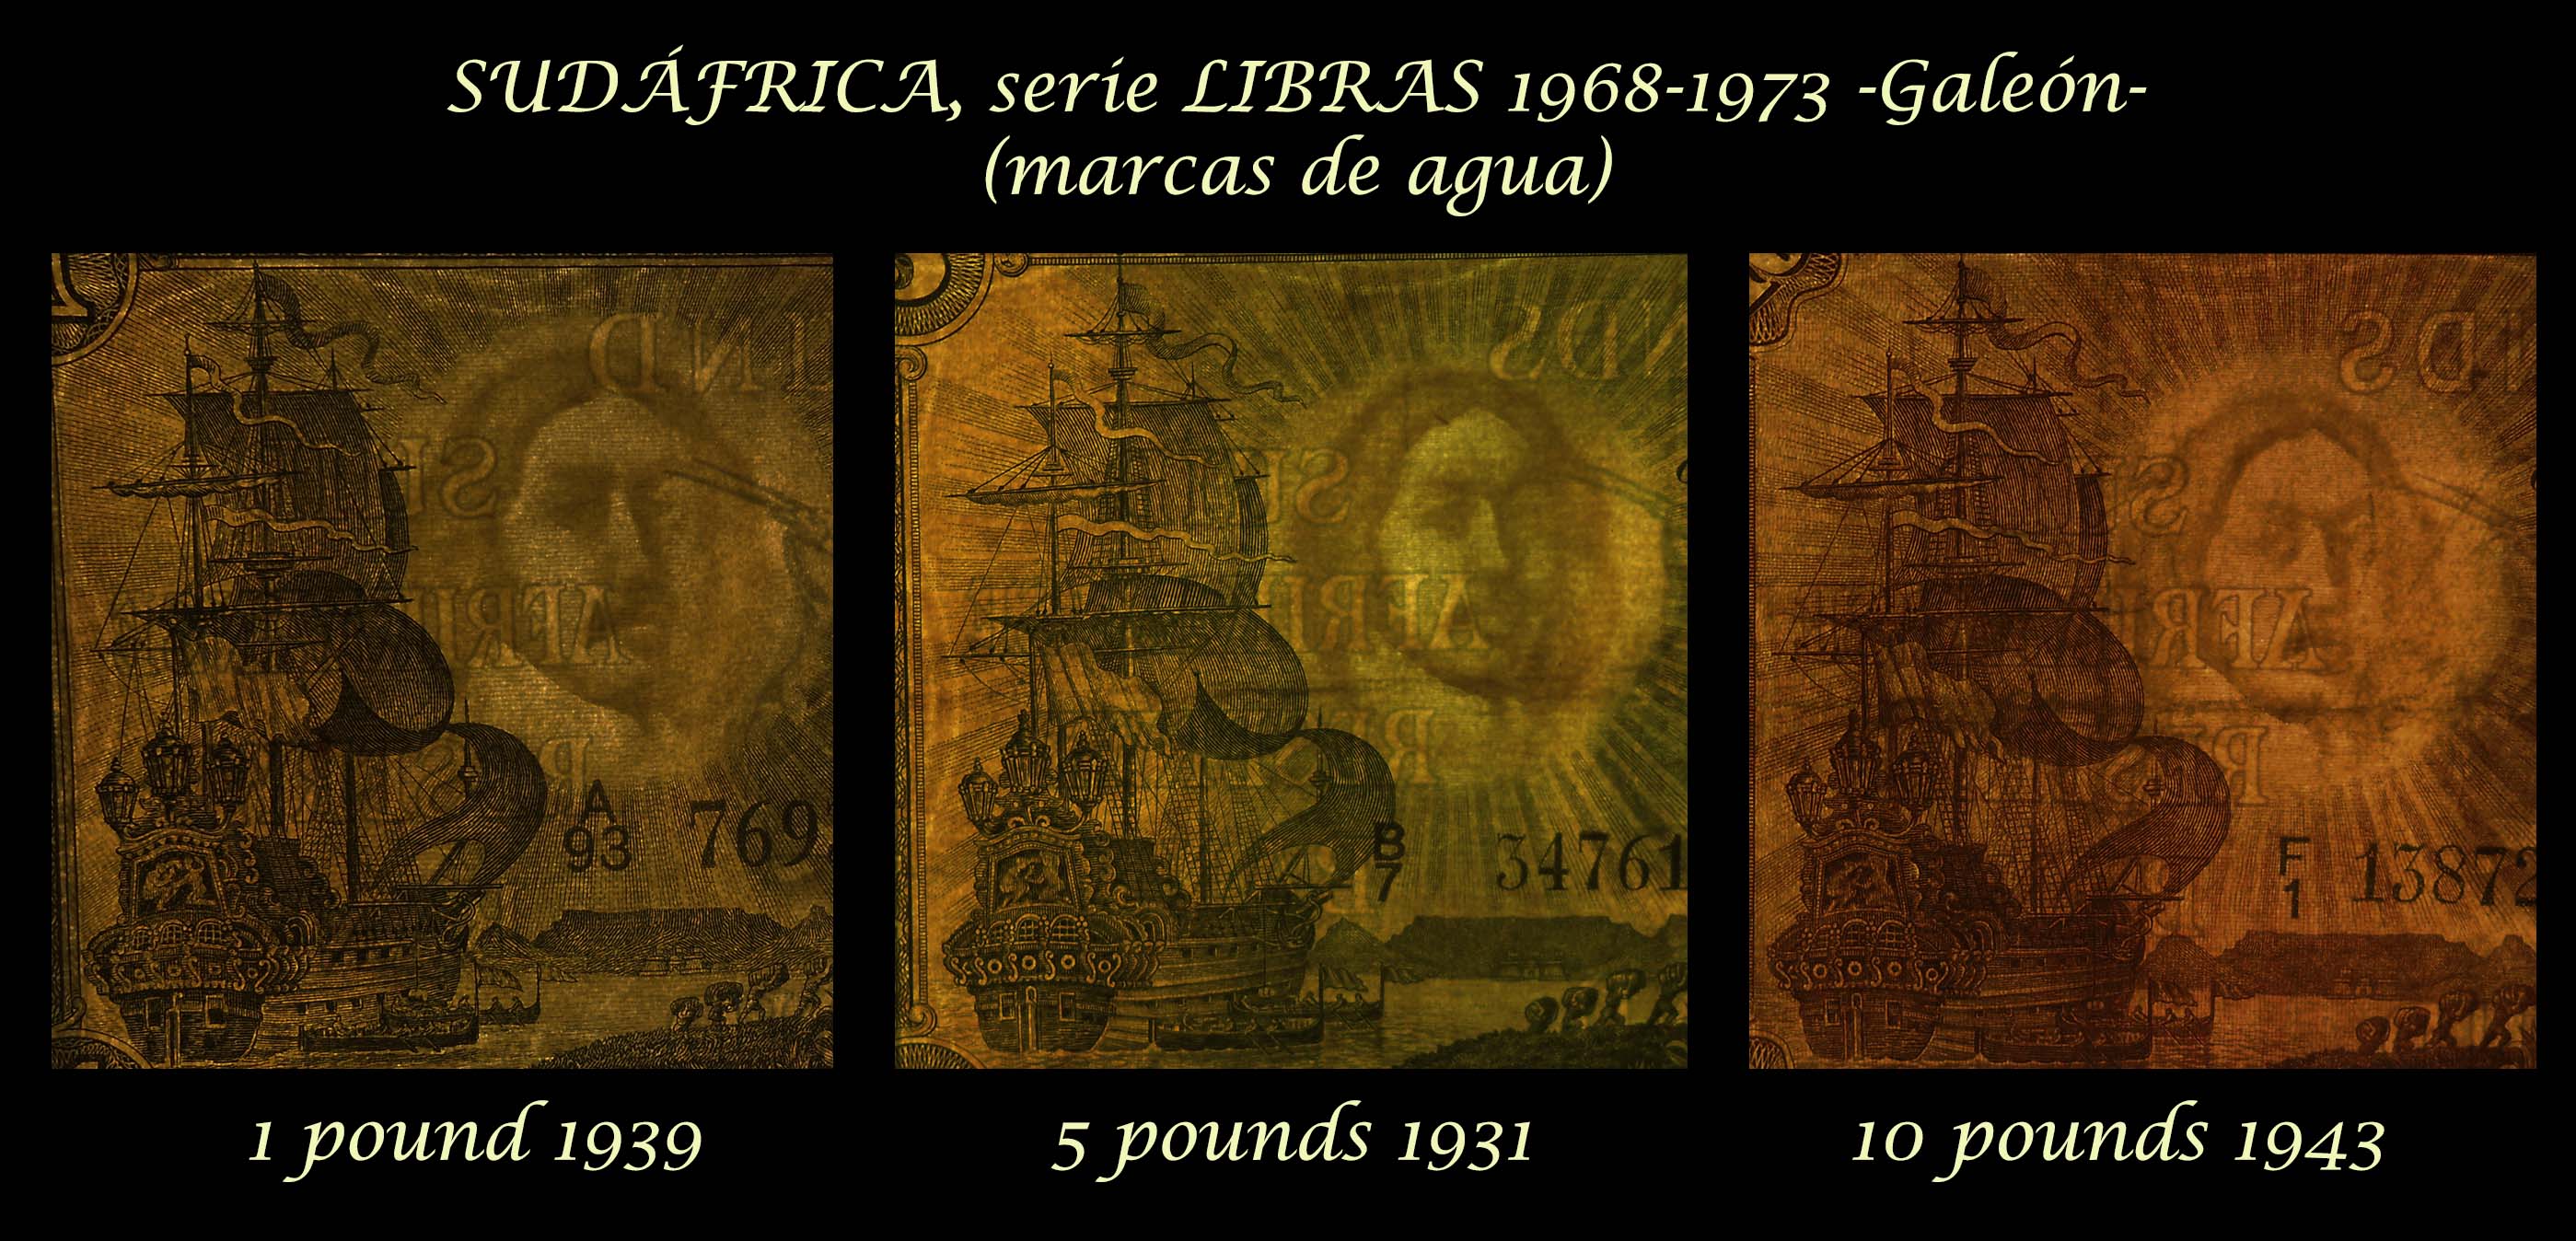 Sudafrica serie pounds 1928-1943 -Galeones marcas de agua